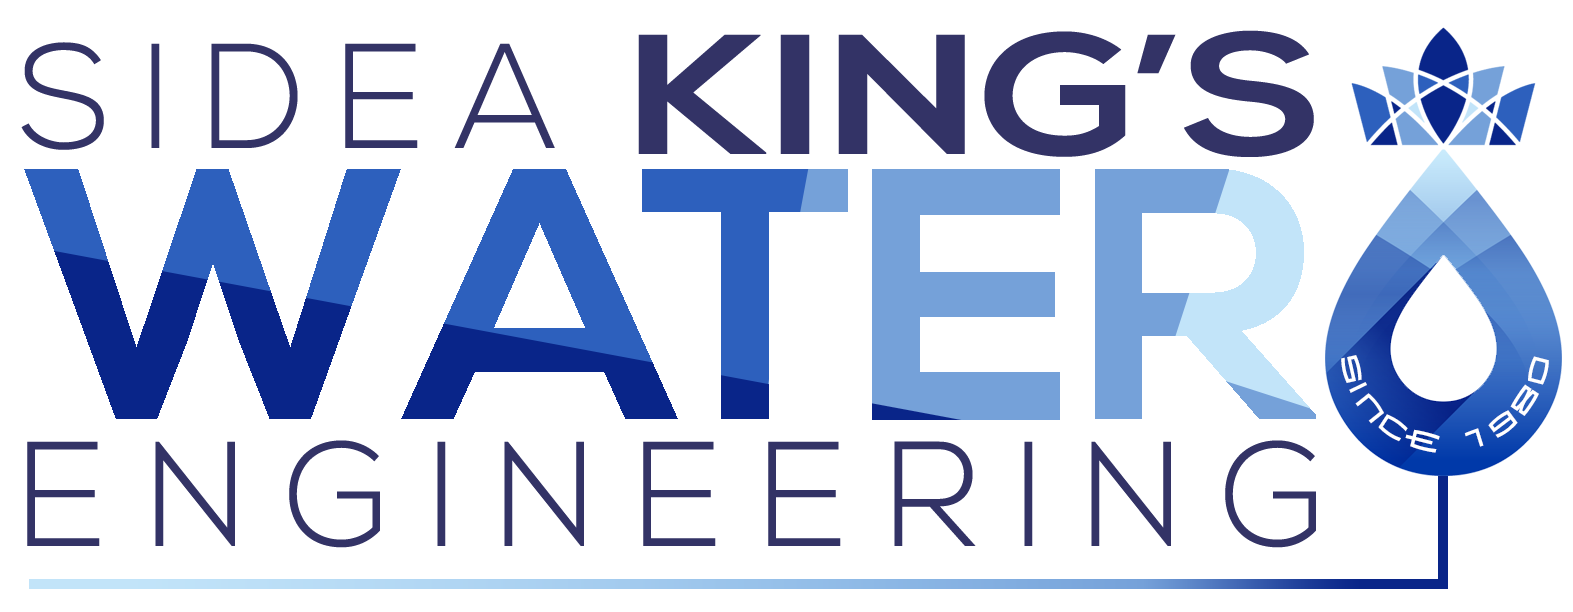 Sidea King's Water